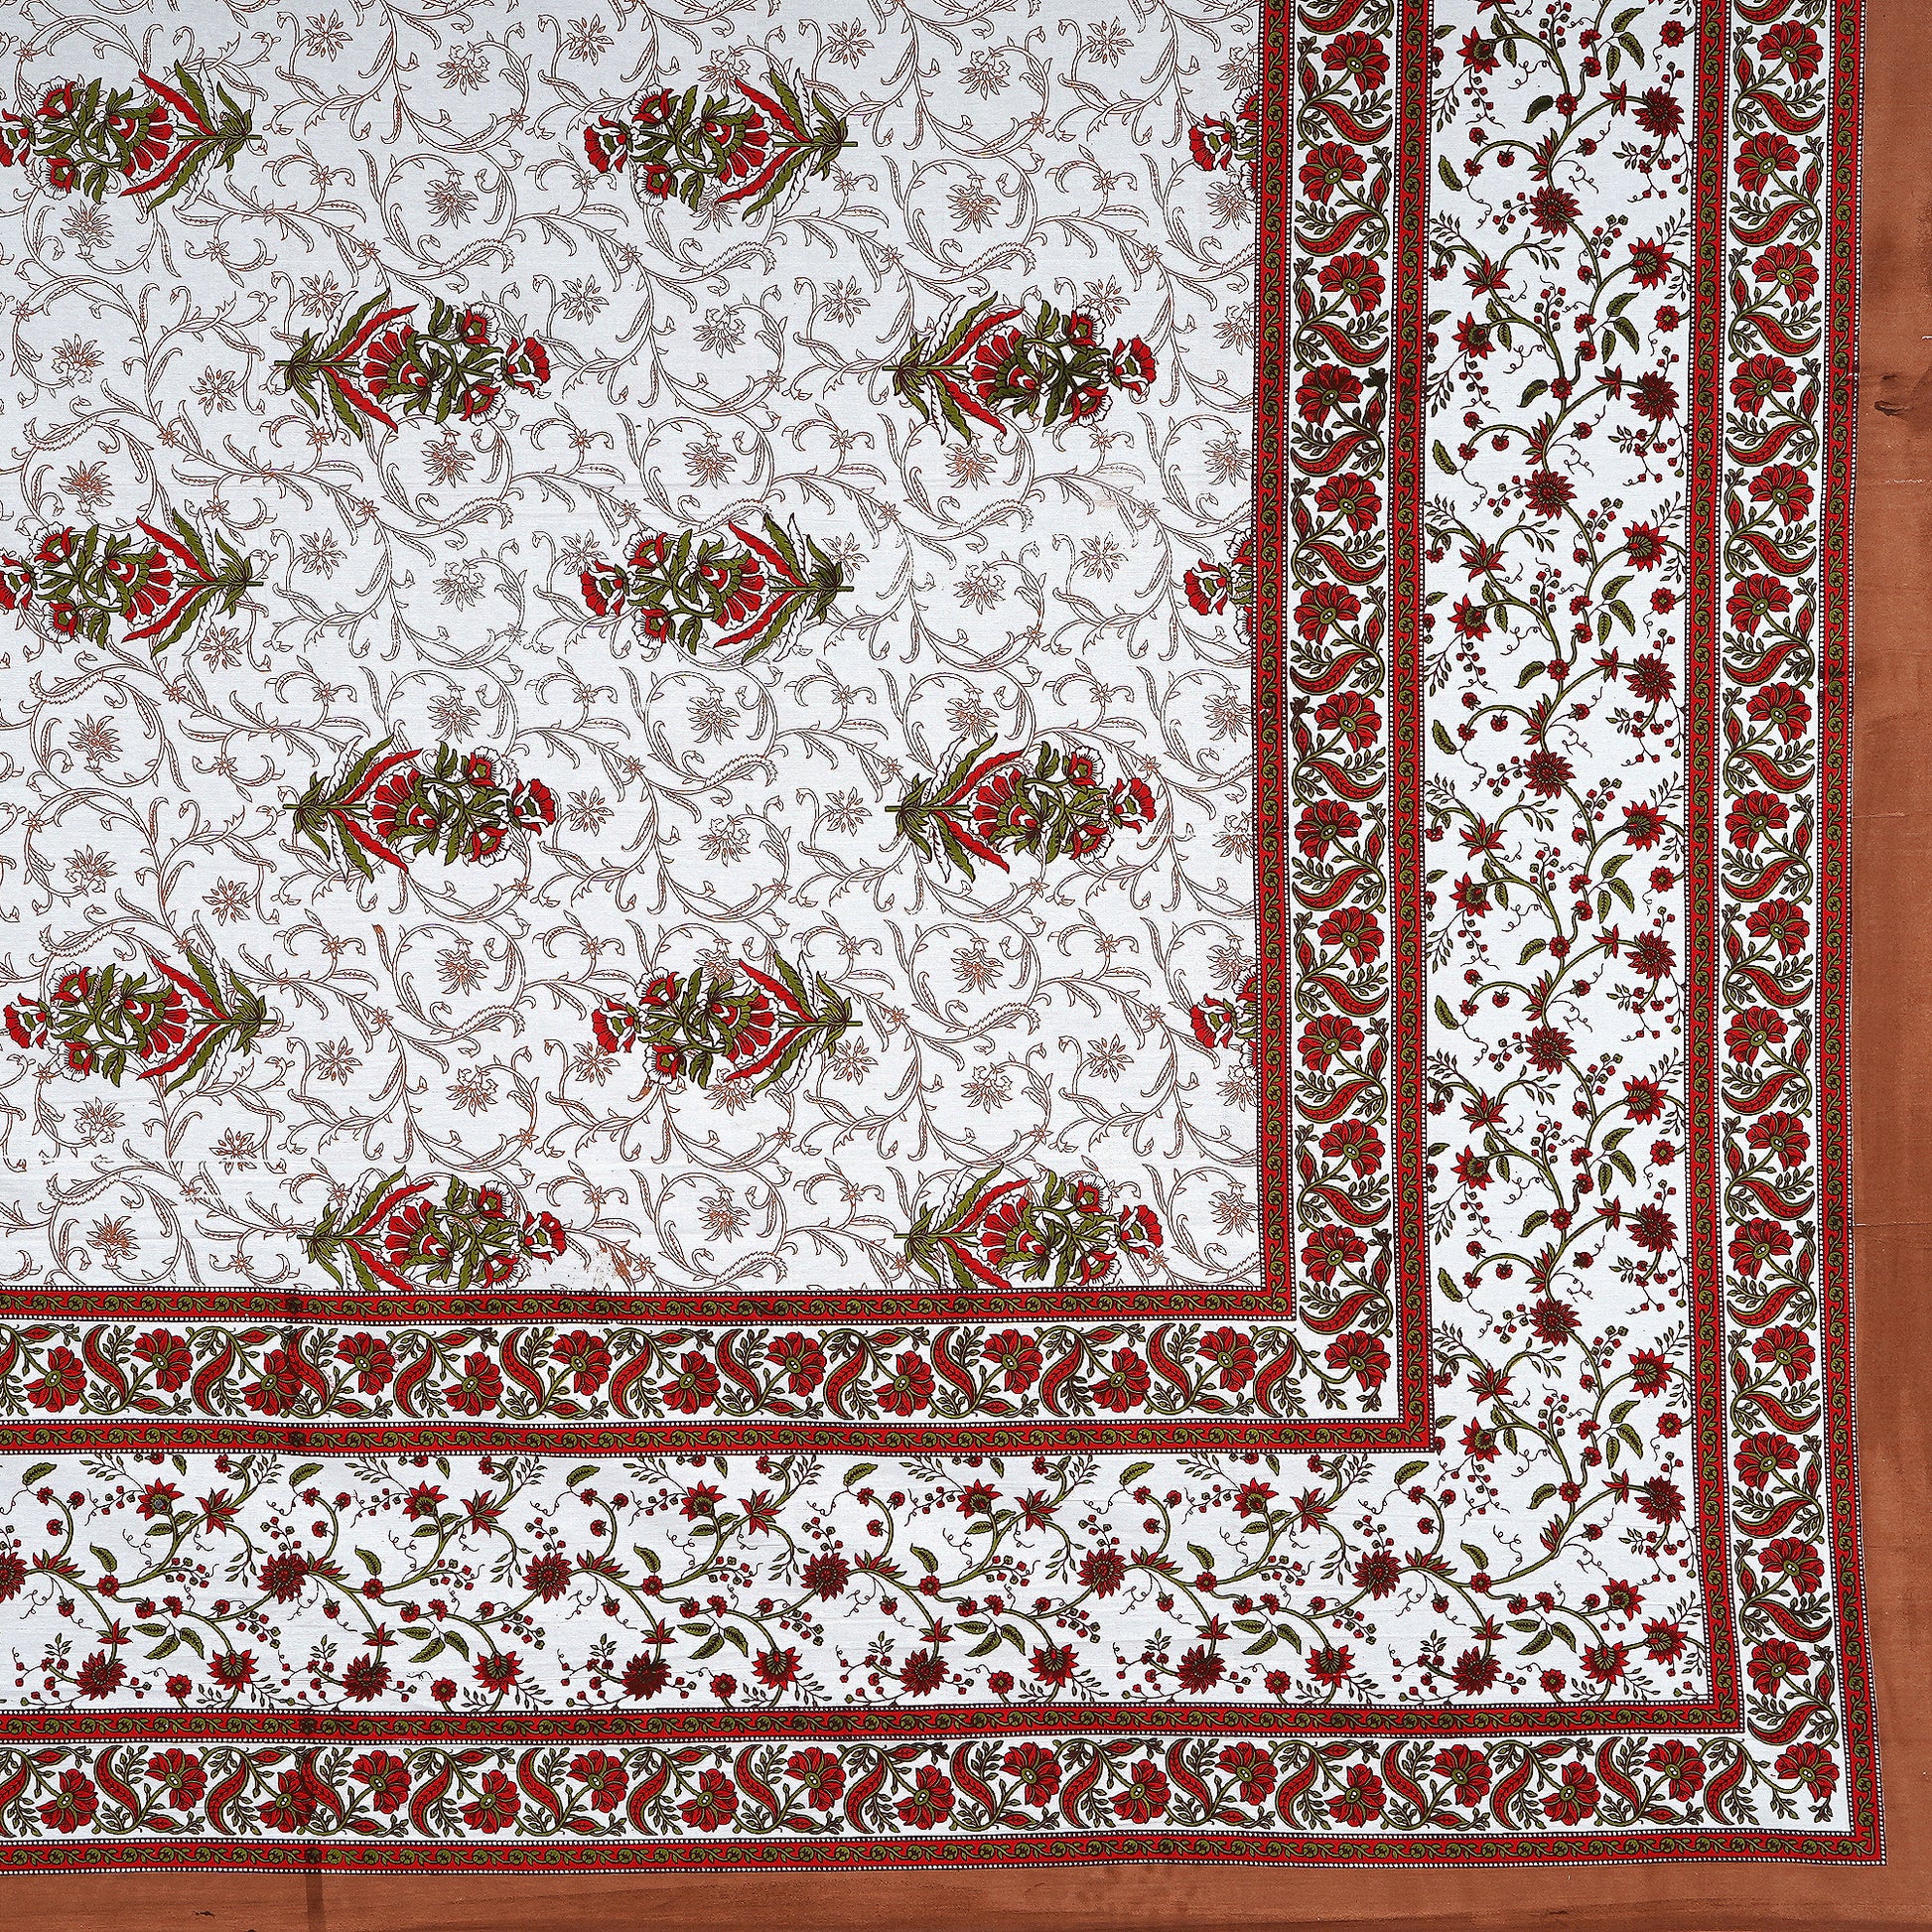 Jaipuri 100% Cotton Double Size Bedsheet ( 280 TC ) www.jaipurtohome.com